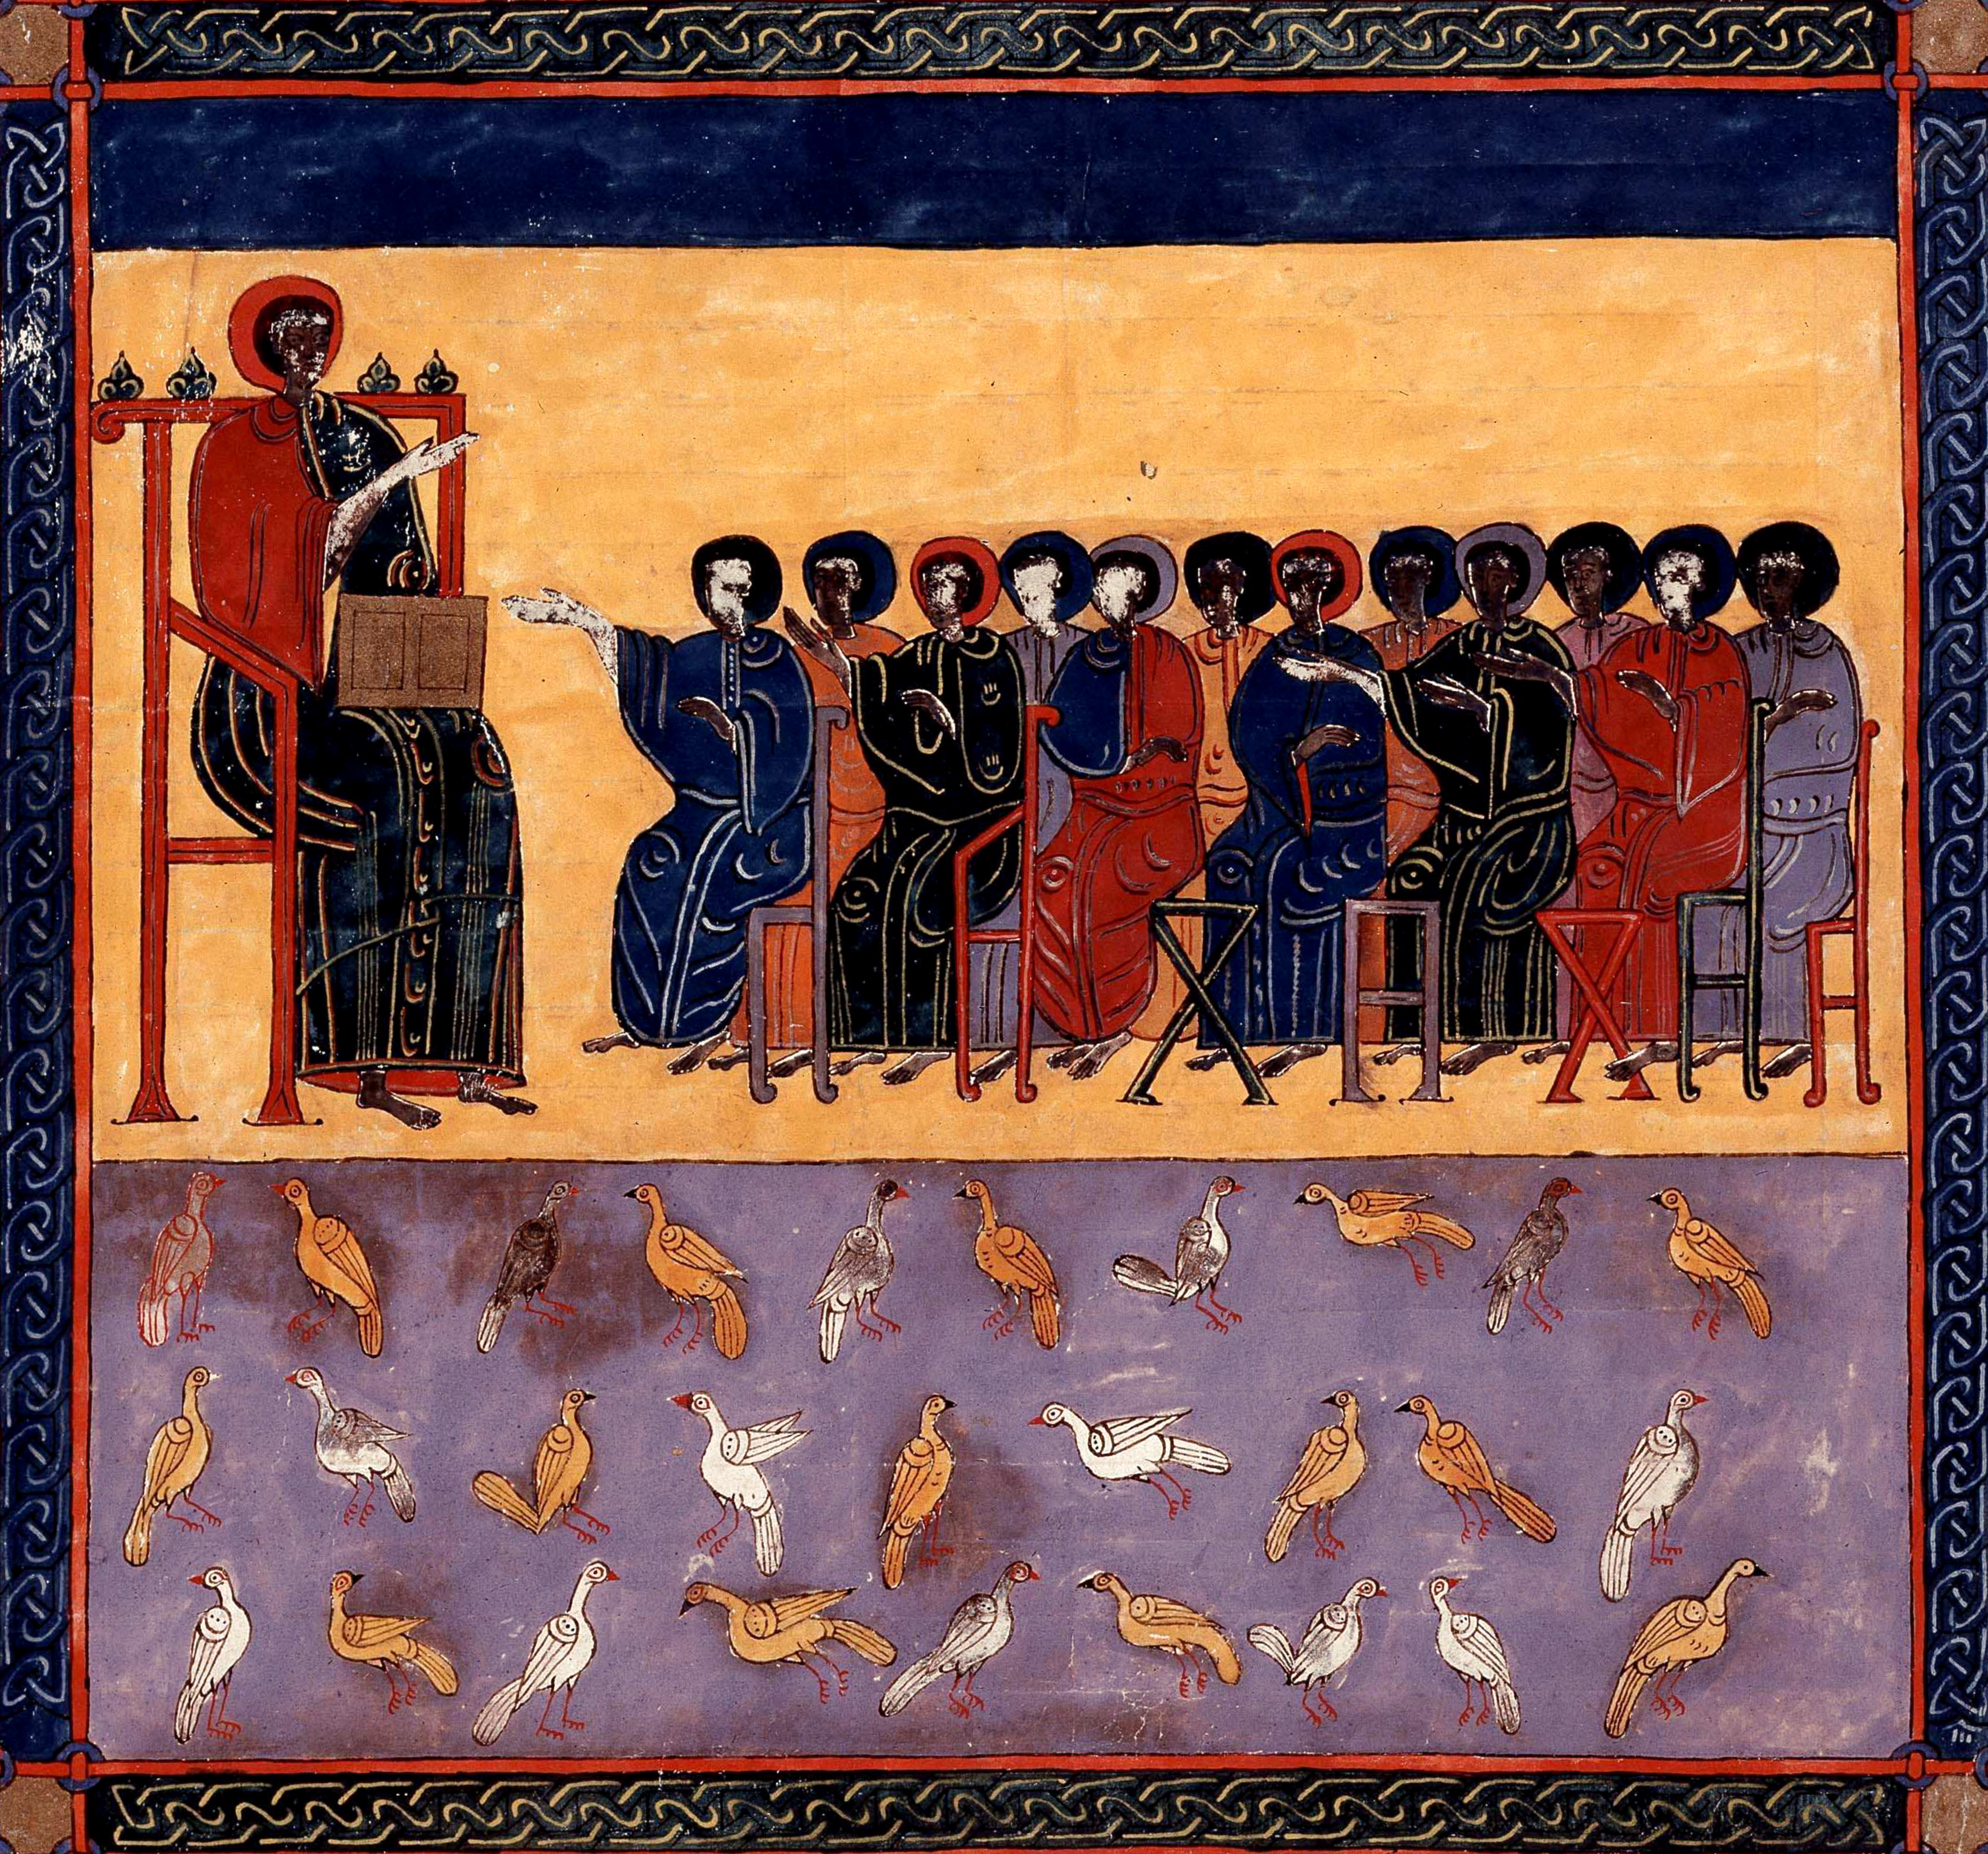 Beatus de Facundus, p. 490 – Les âmes des martyrs et des confesseurs ressuscitent et règnent avec le Christ pour mille ans (Ap 20, 4-6).